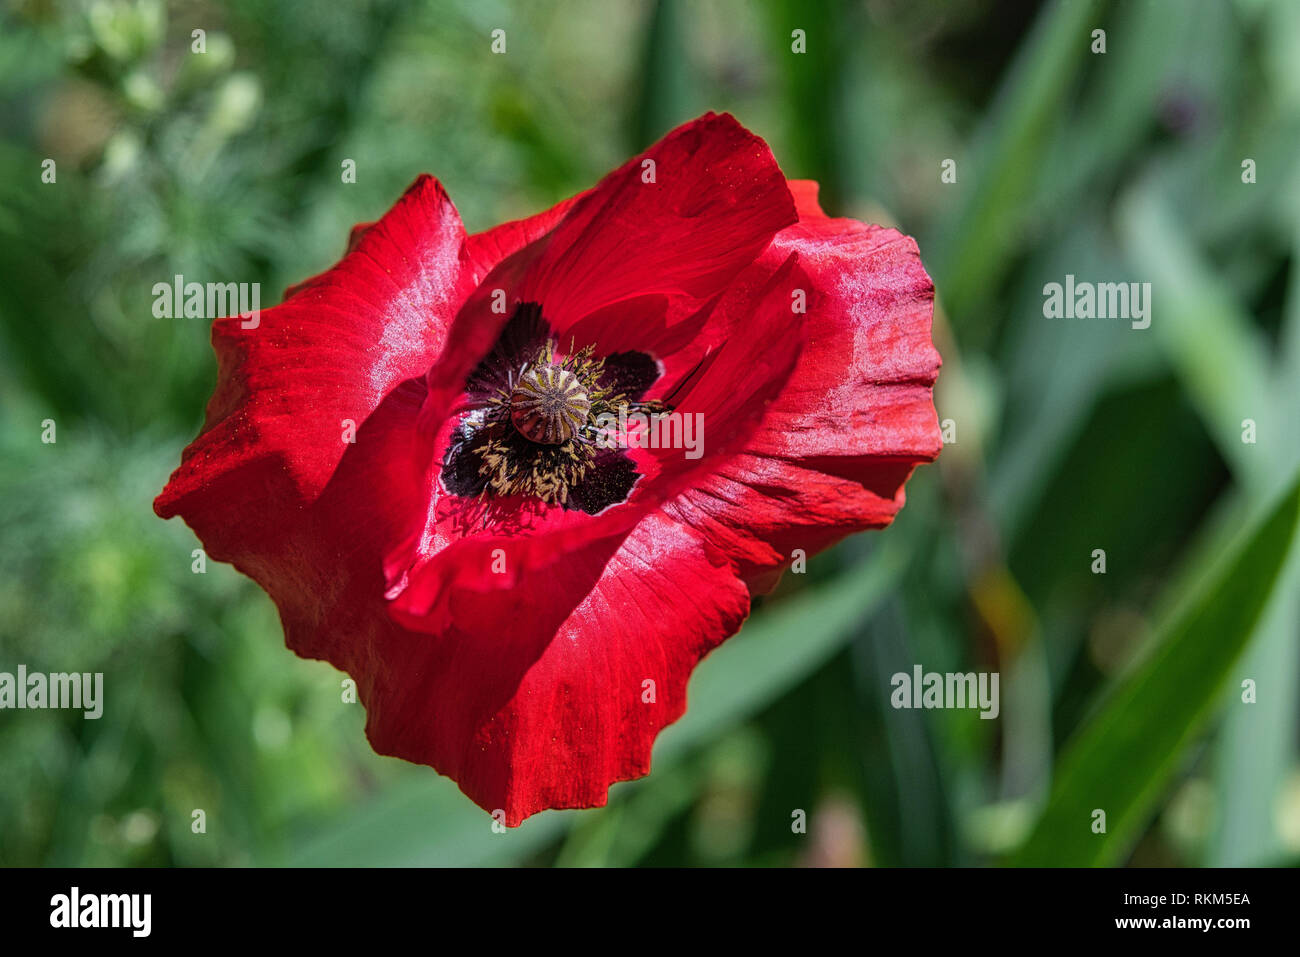 Schöne rote breadseed Mohn Blume im Wind auf einem grünen Frühling Garten. Sanfte Bewegungen in der Brise. Schlafmohn (Papaver somniferum). Stockfoto